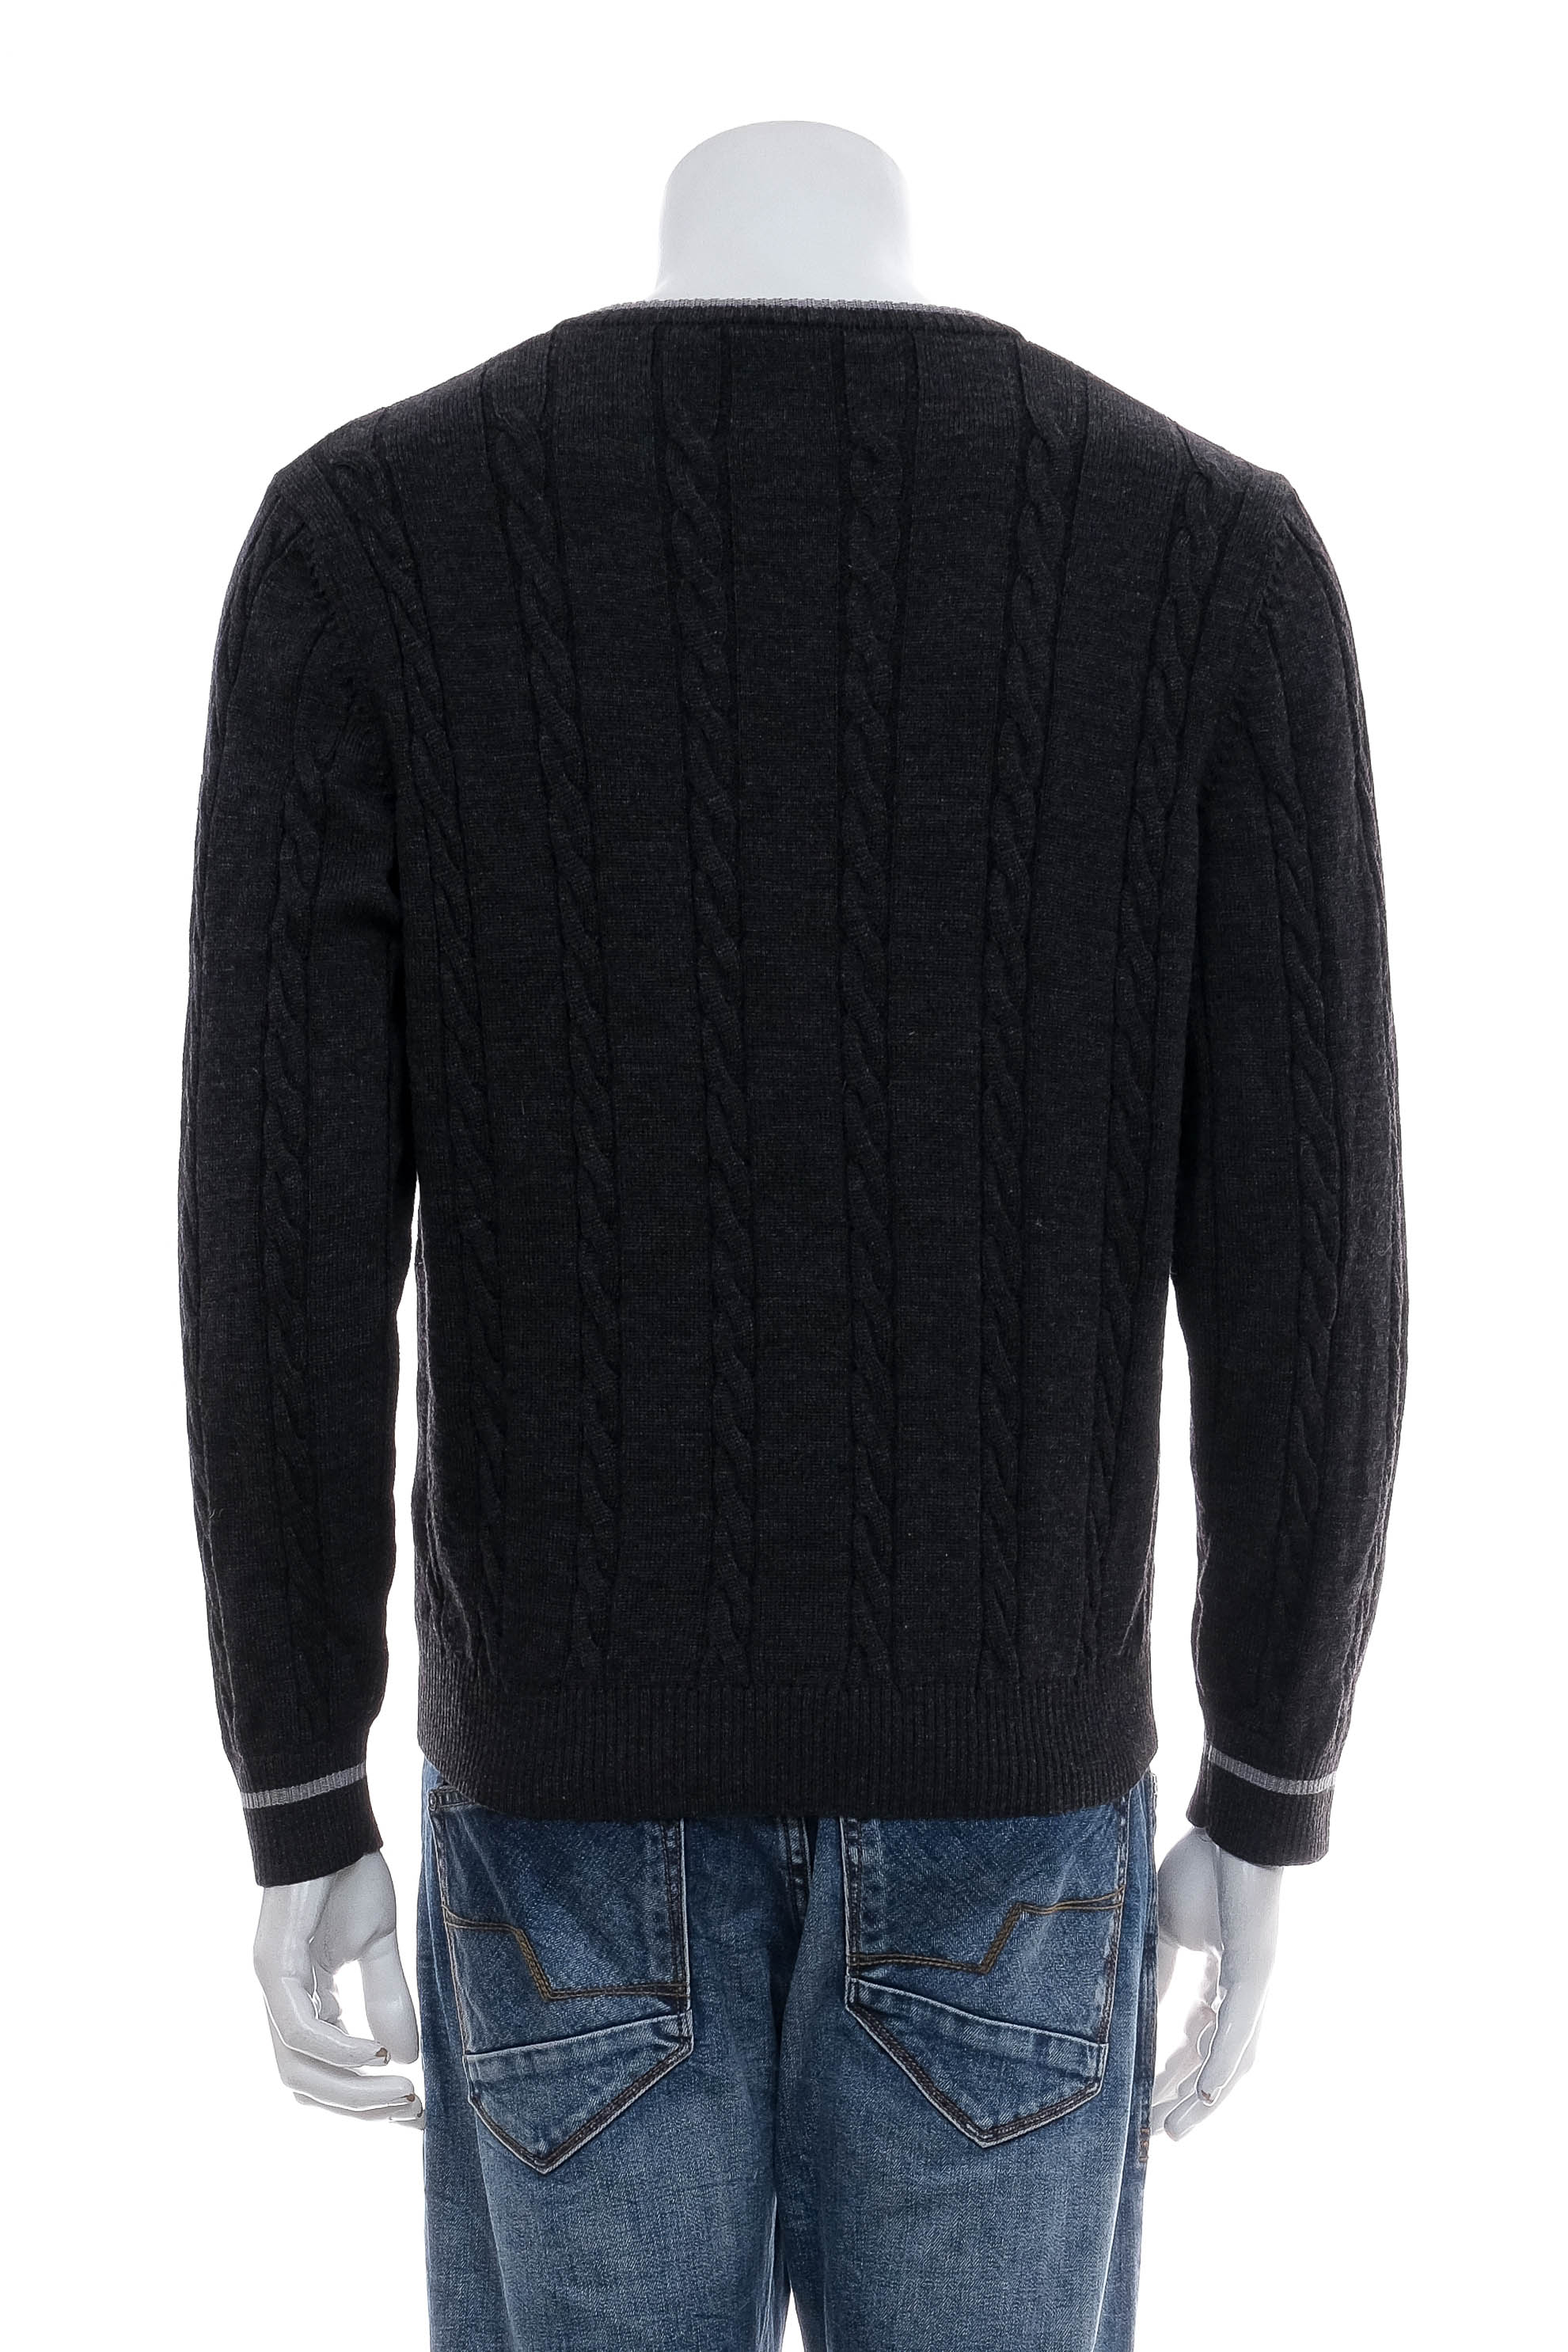 Men's sweater - Marz - 1